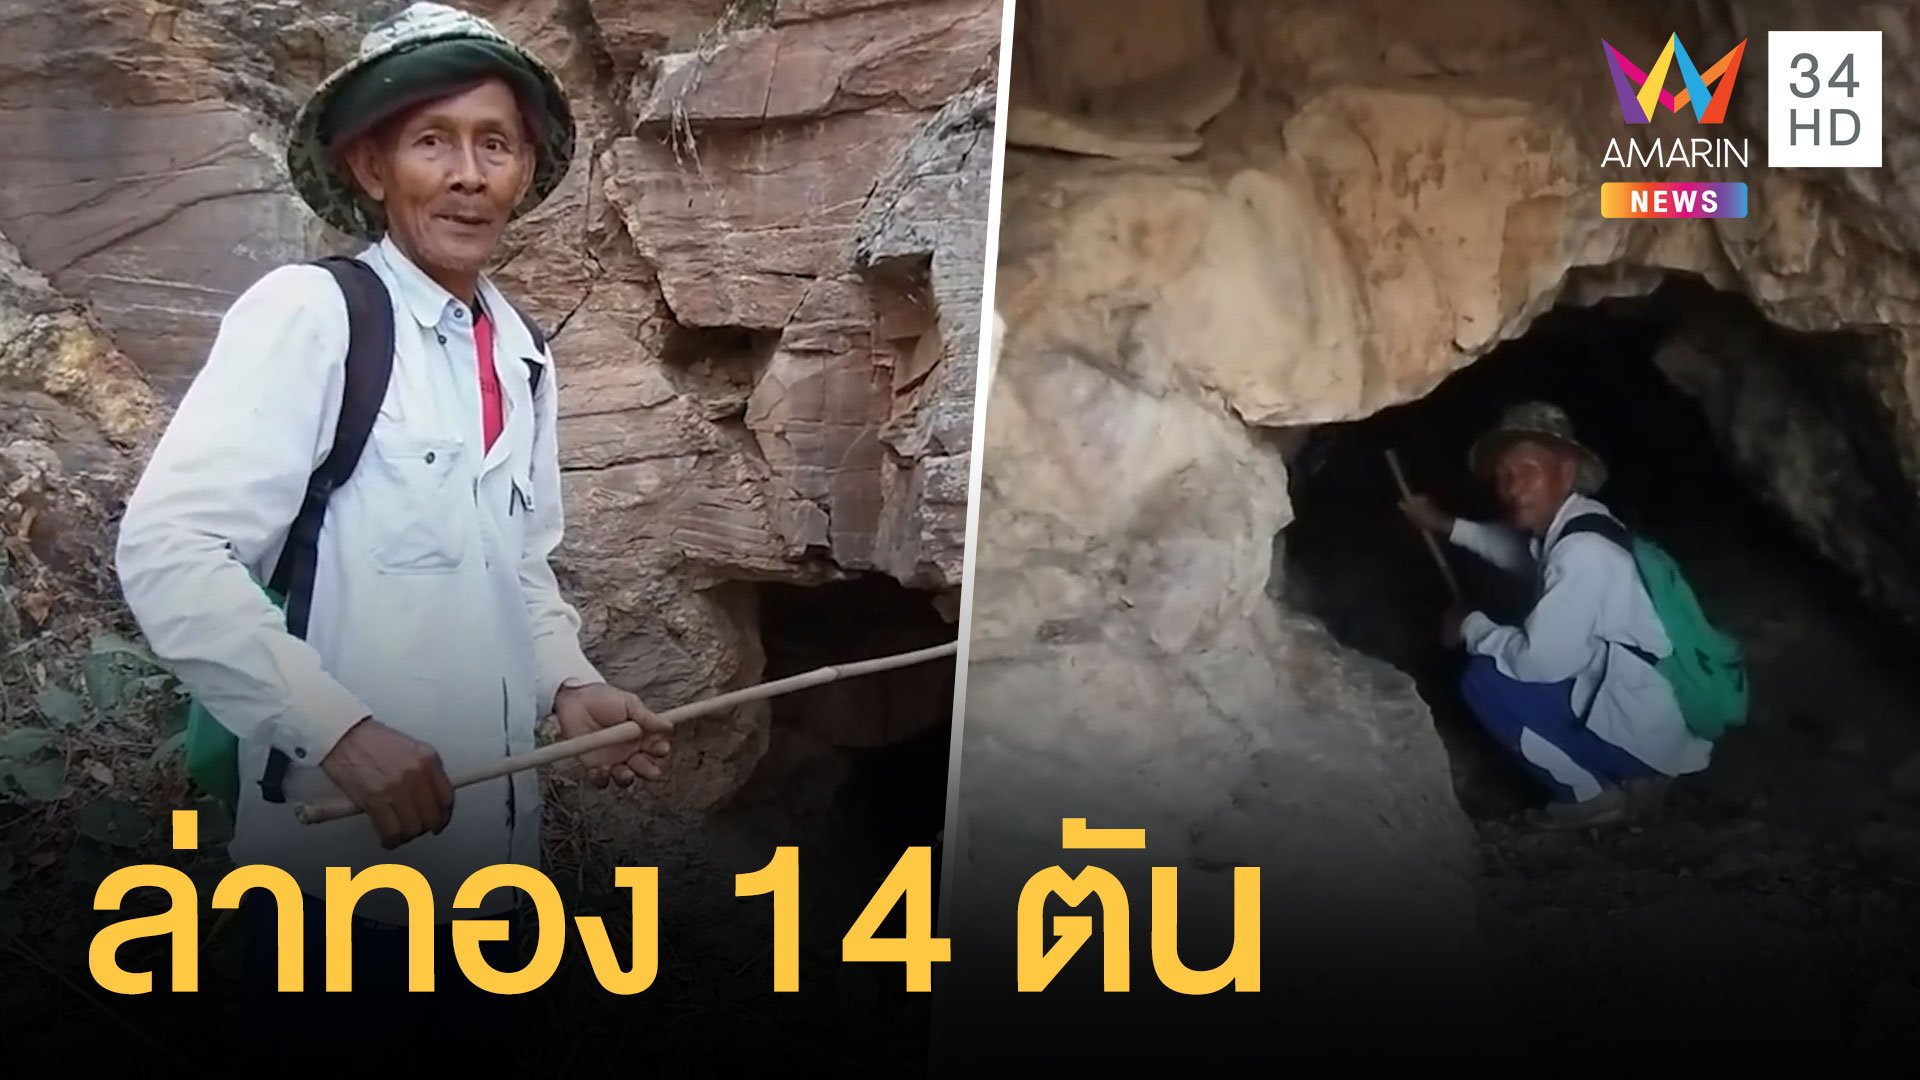 ชาวบ้านเข้าถ้ำหาสมบัติทอง 14 ตัน มูลค่า 2 หมื่นล้าน | ข่าวอรุณอมรินทร์ | 21 ก.พ. 64 | AMARIN TVHD34